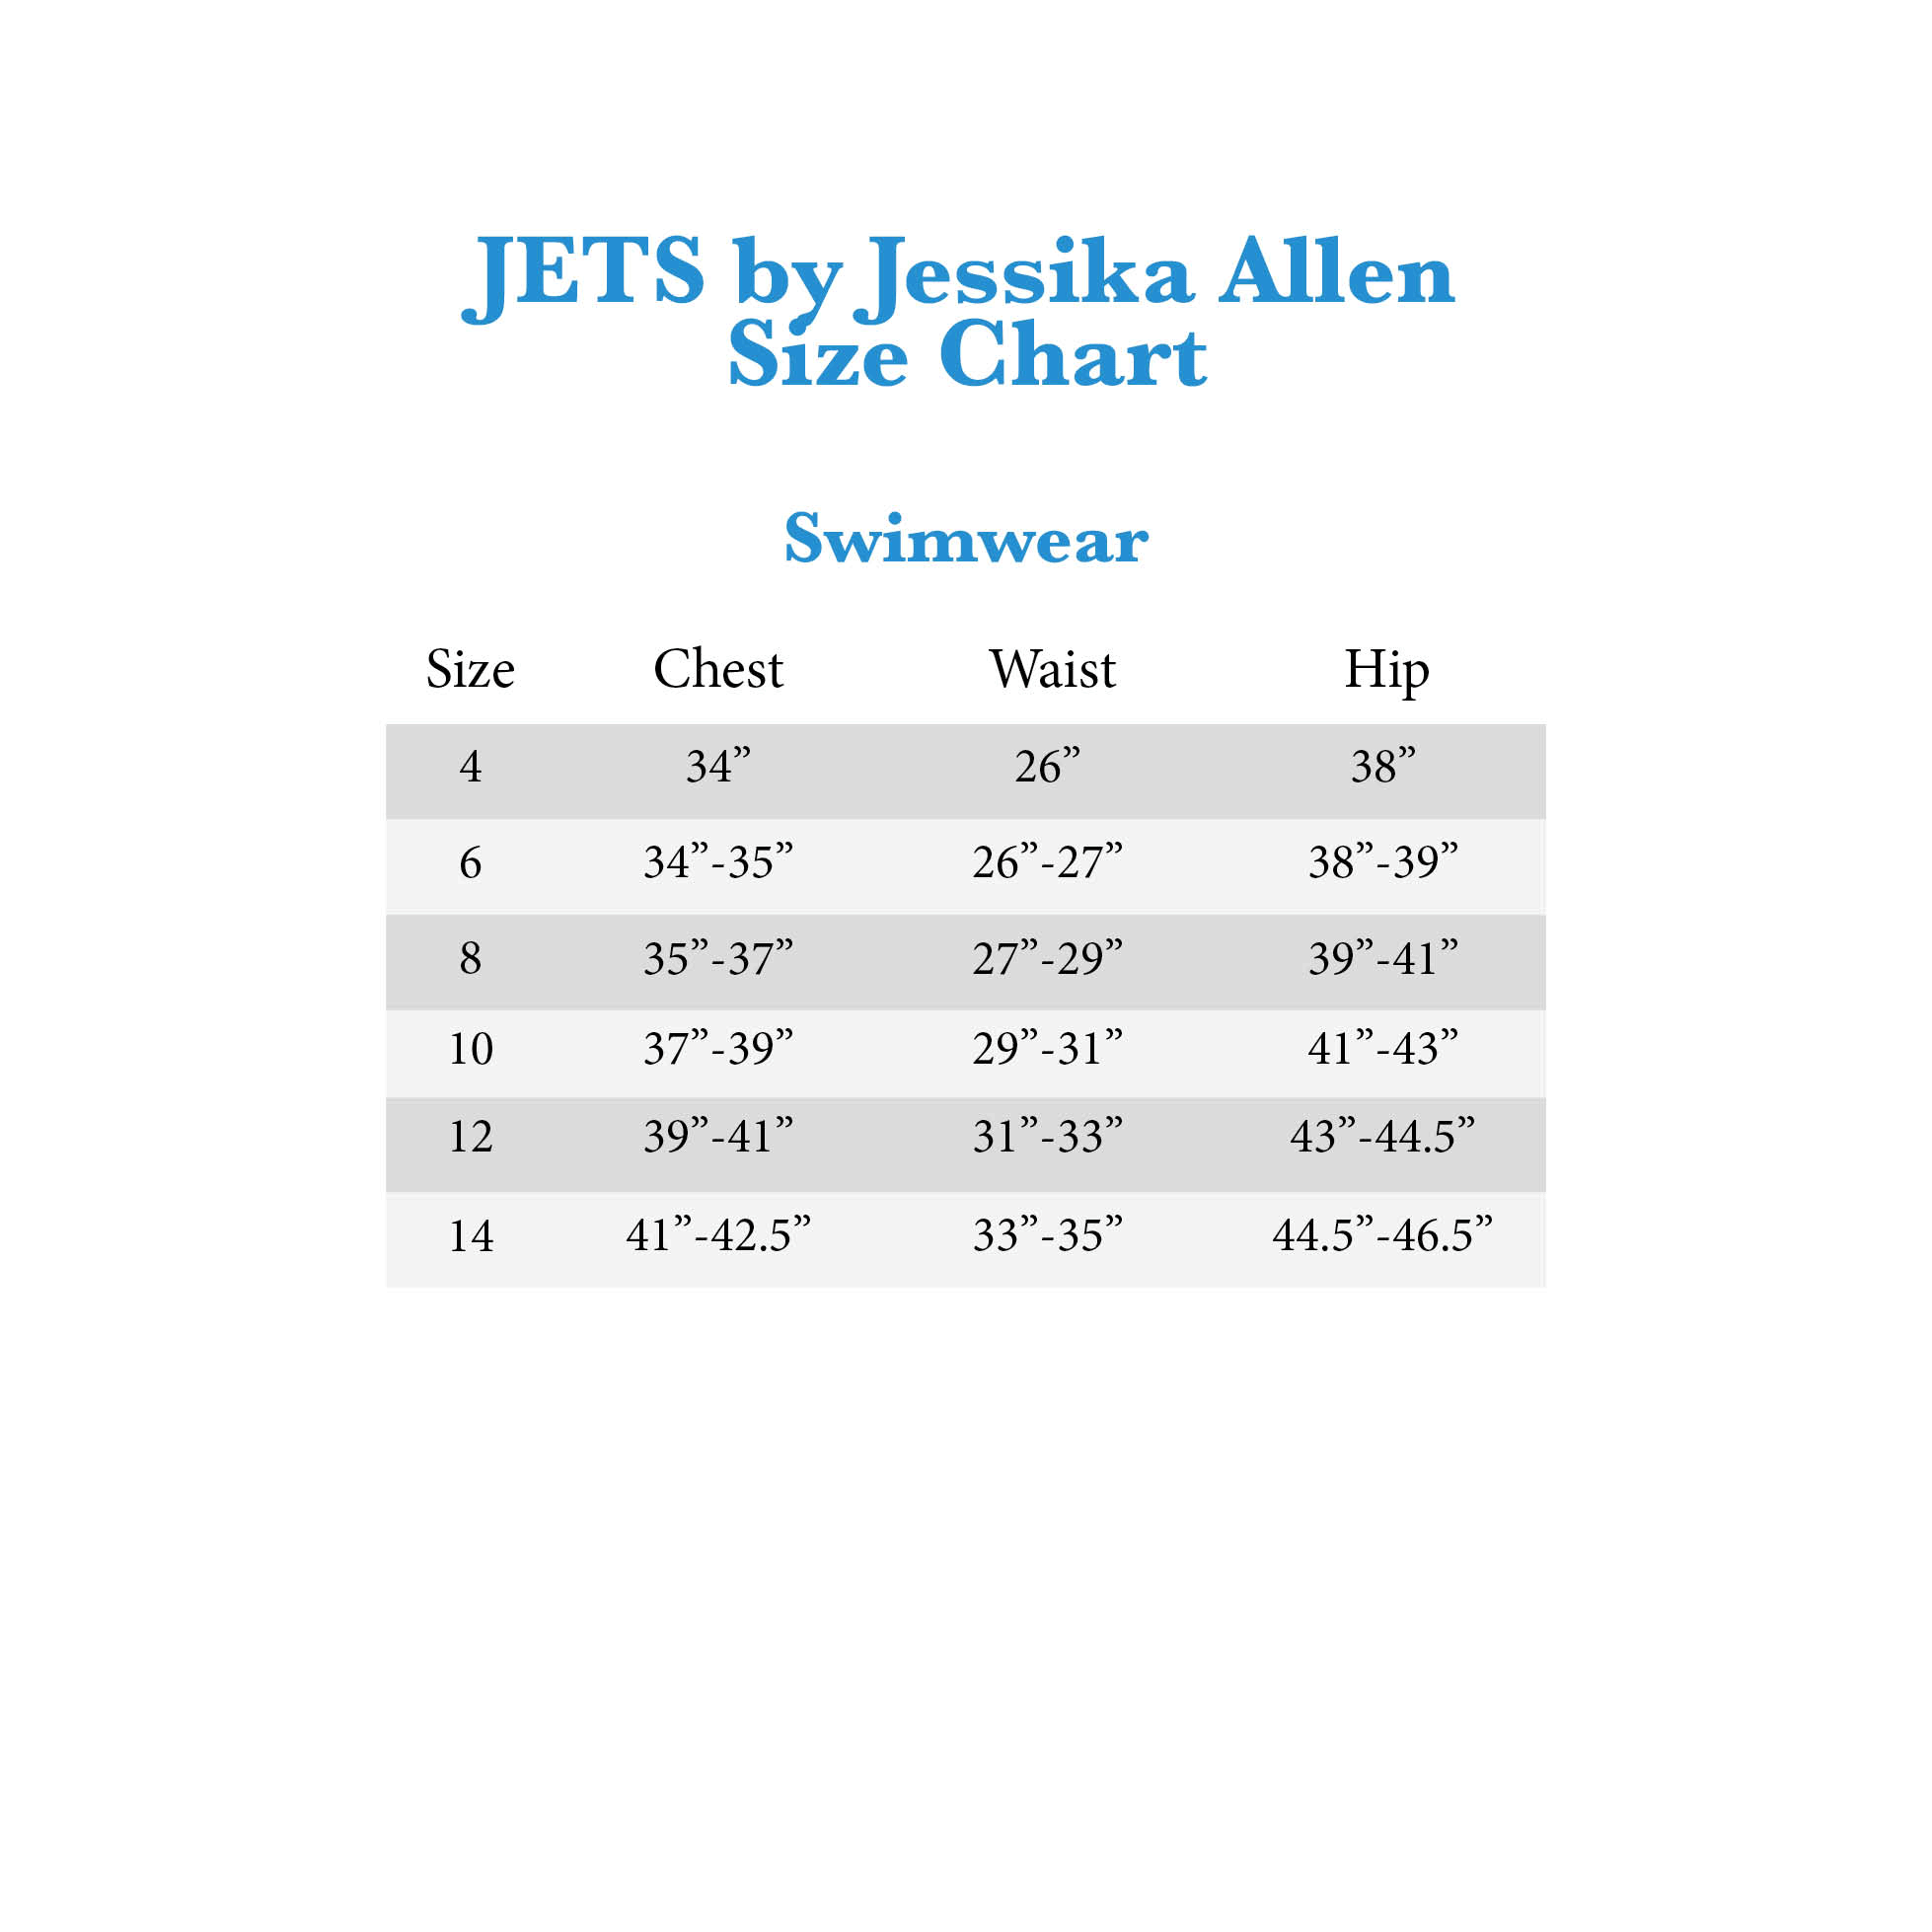 Jets Swimwear Size Chart